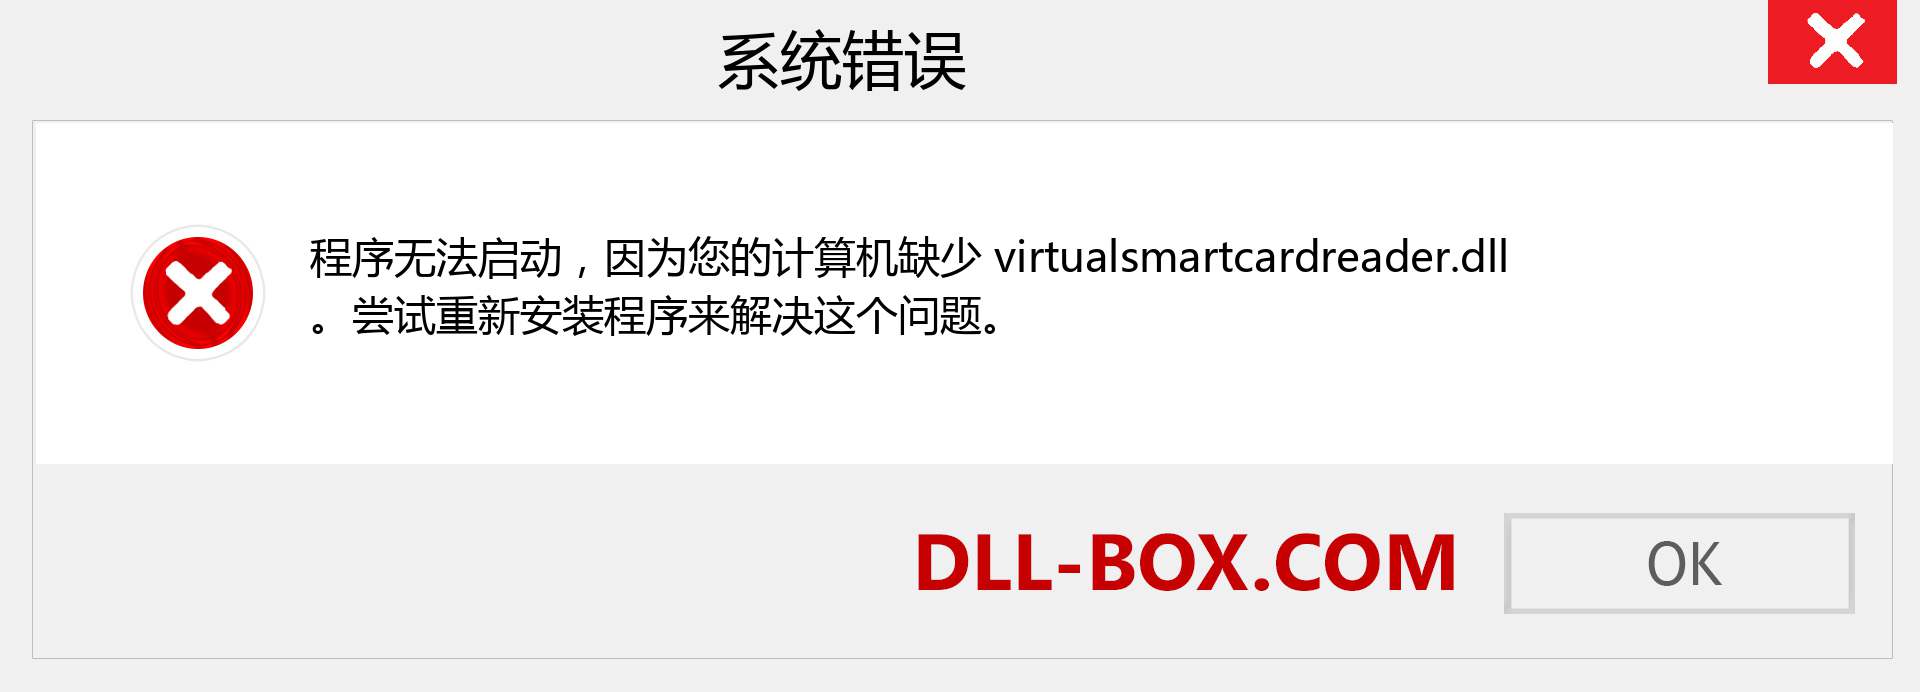 virtualsmartcardreader.dll 文件丢失？。 适用于 Windows 7、8、10 的下载 - 修复 Windows、照片、图像上的 virtualsmartcardreader dll 丢失错误